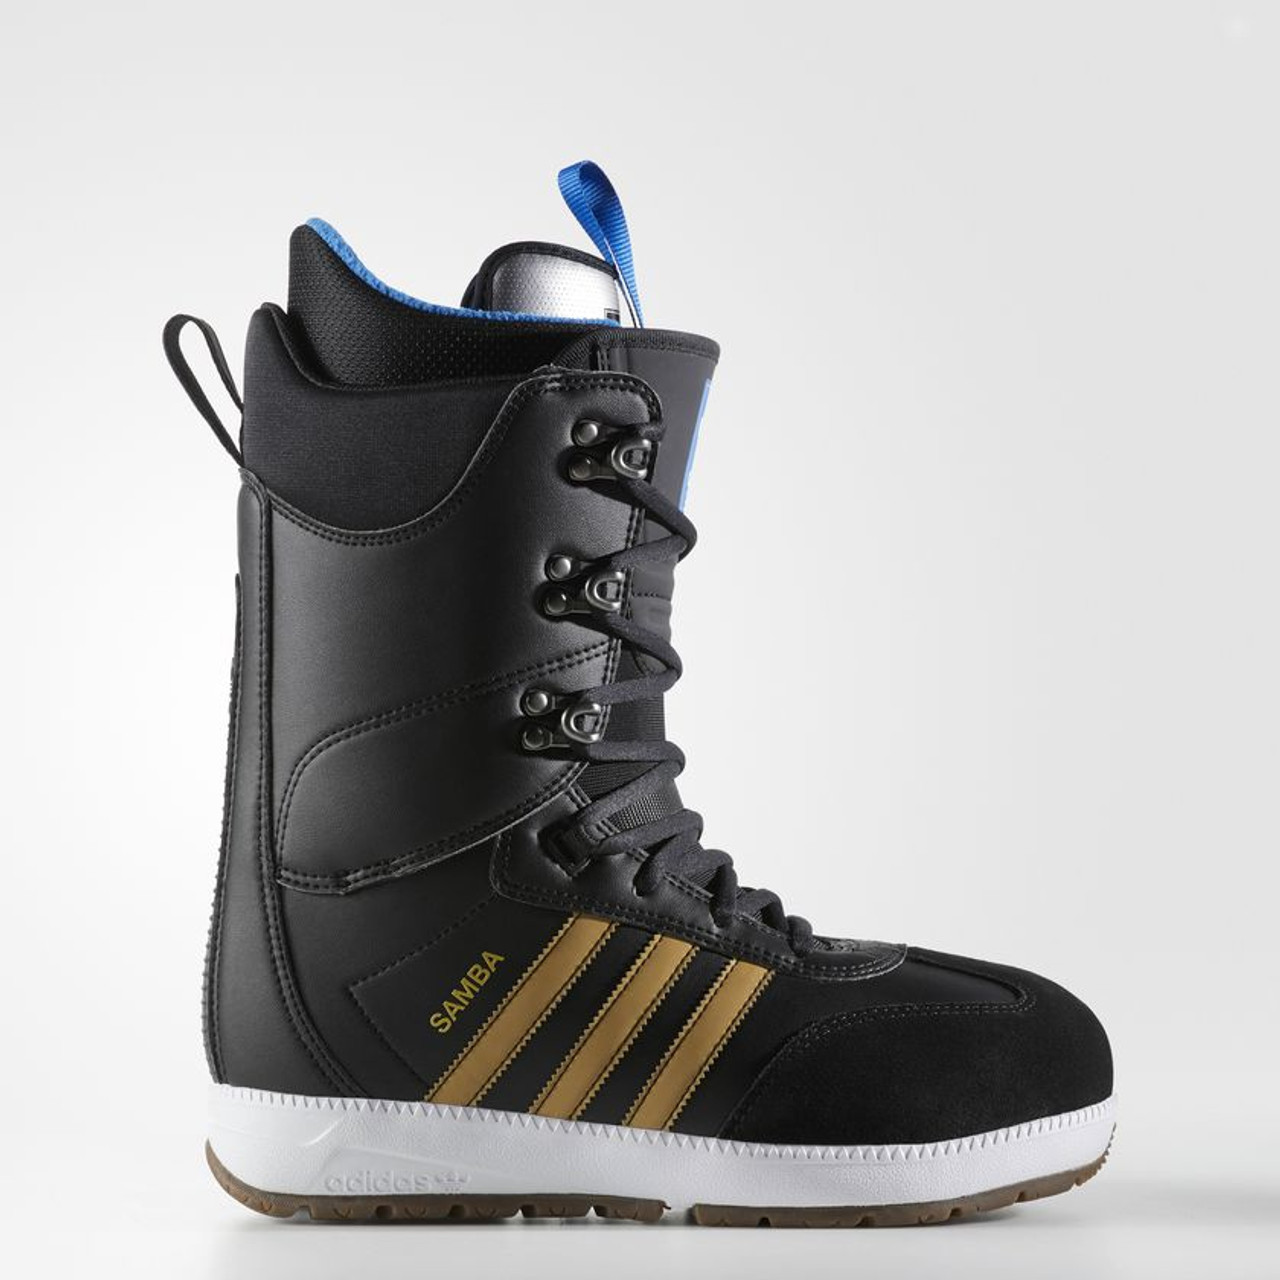 adidas mens snowboard boots